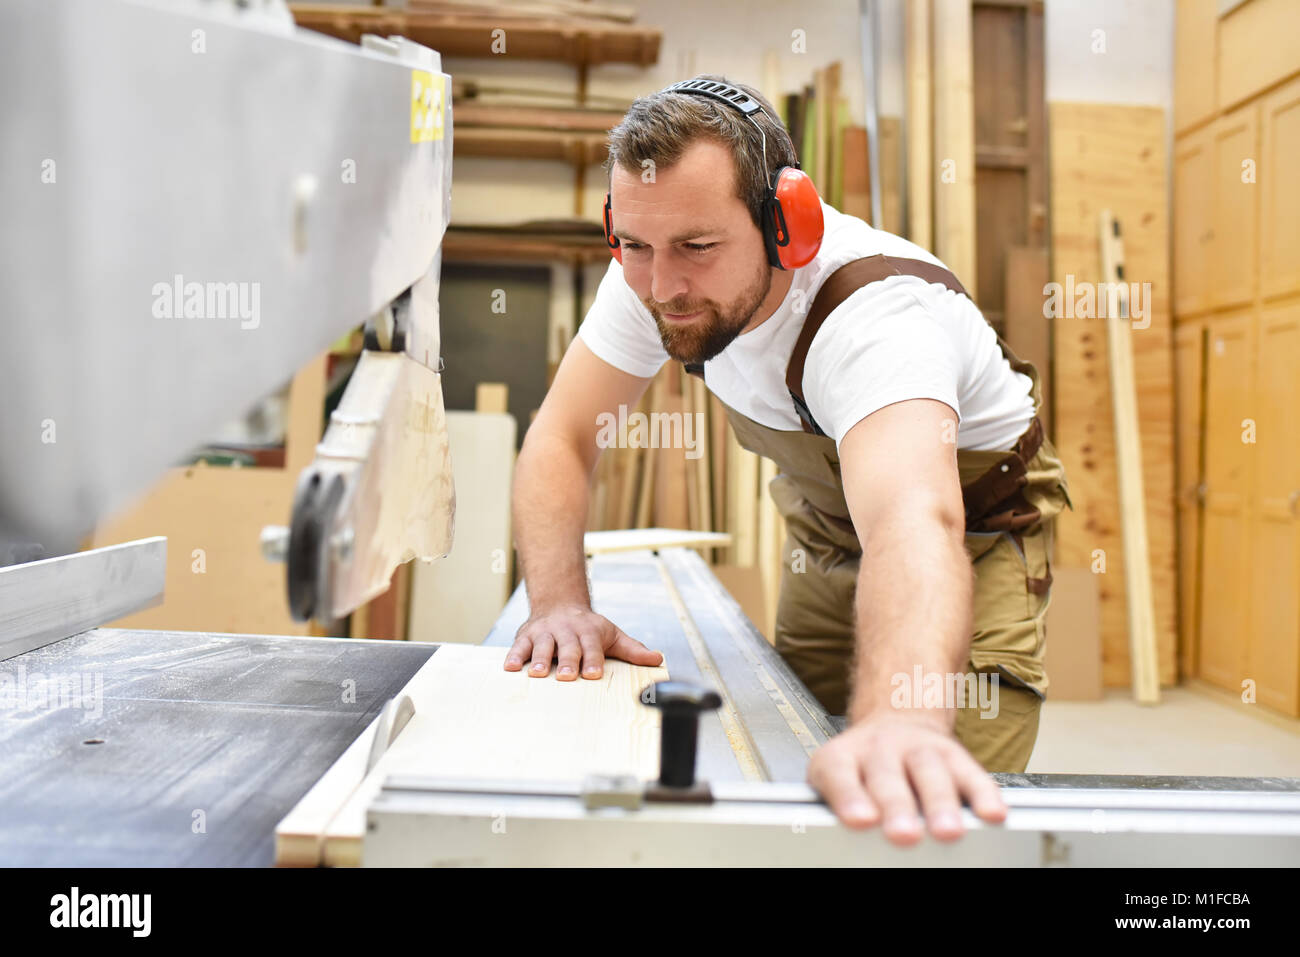 Friendly carpenter avec protège-oreilles et des vêtements de travail travaillant sur une scie dans l'atelier Banque D'Images